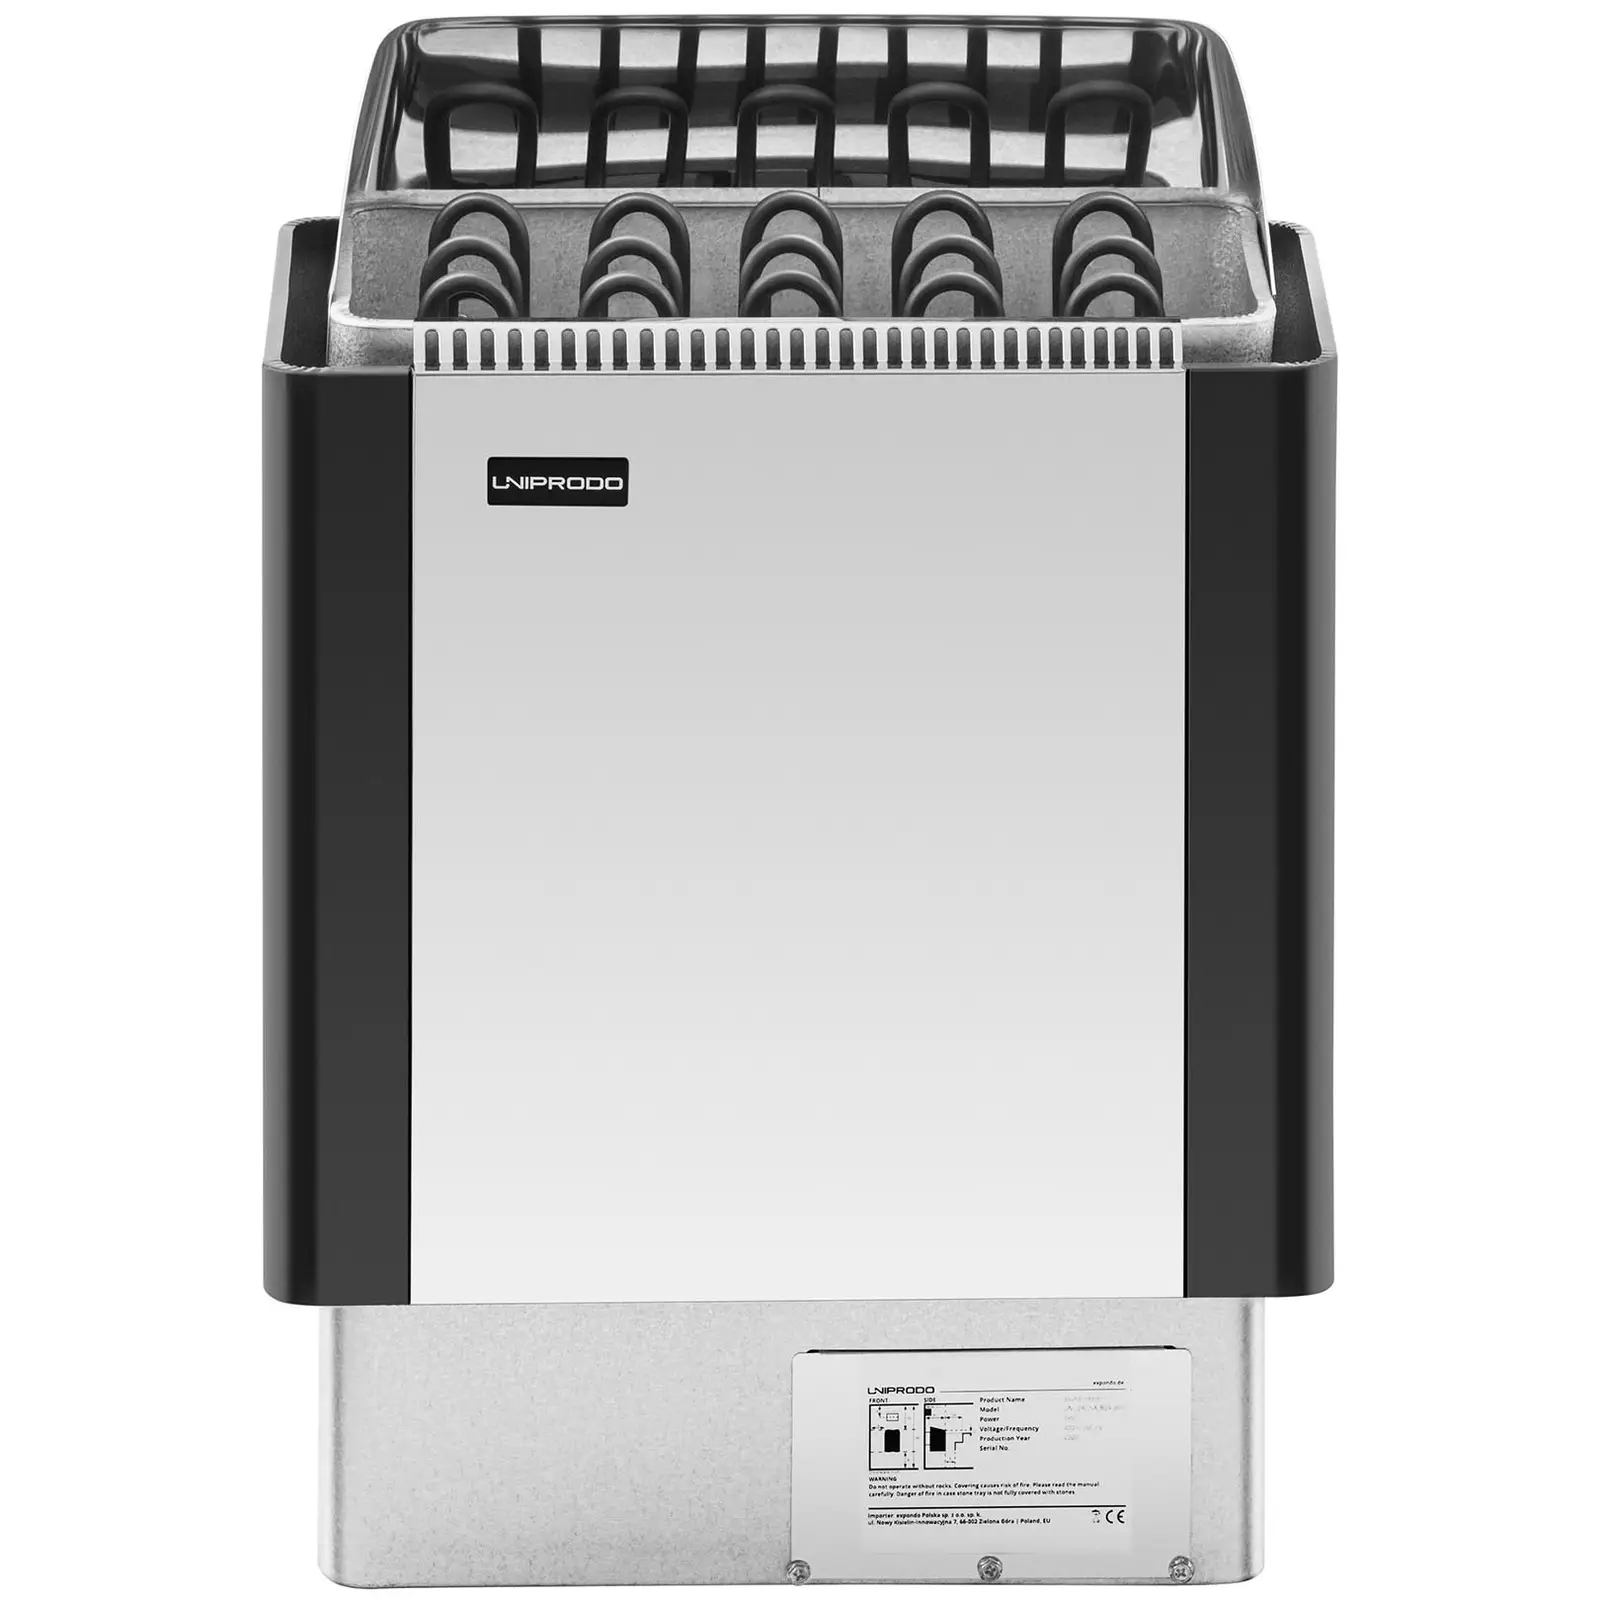 Saunaofen - 9 kW - 30 bis 110 °C - Edelstahlblende